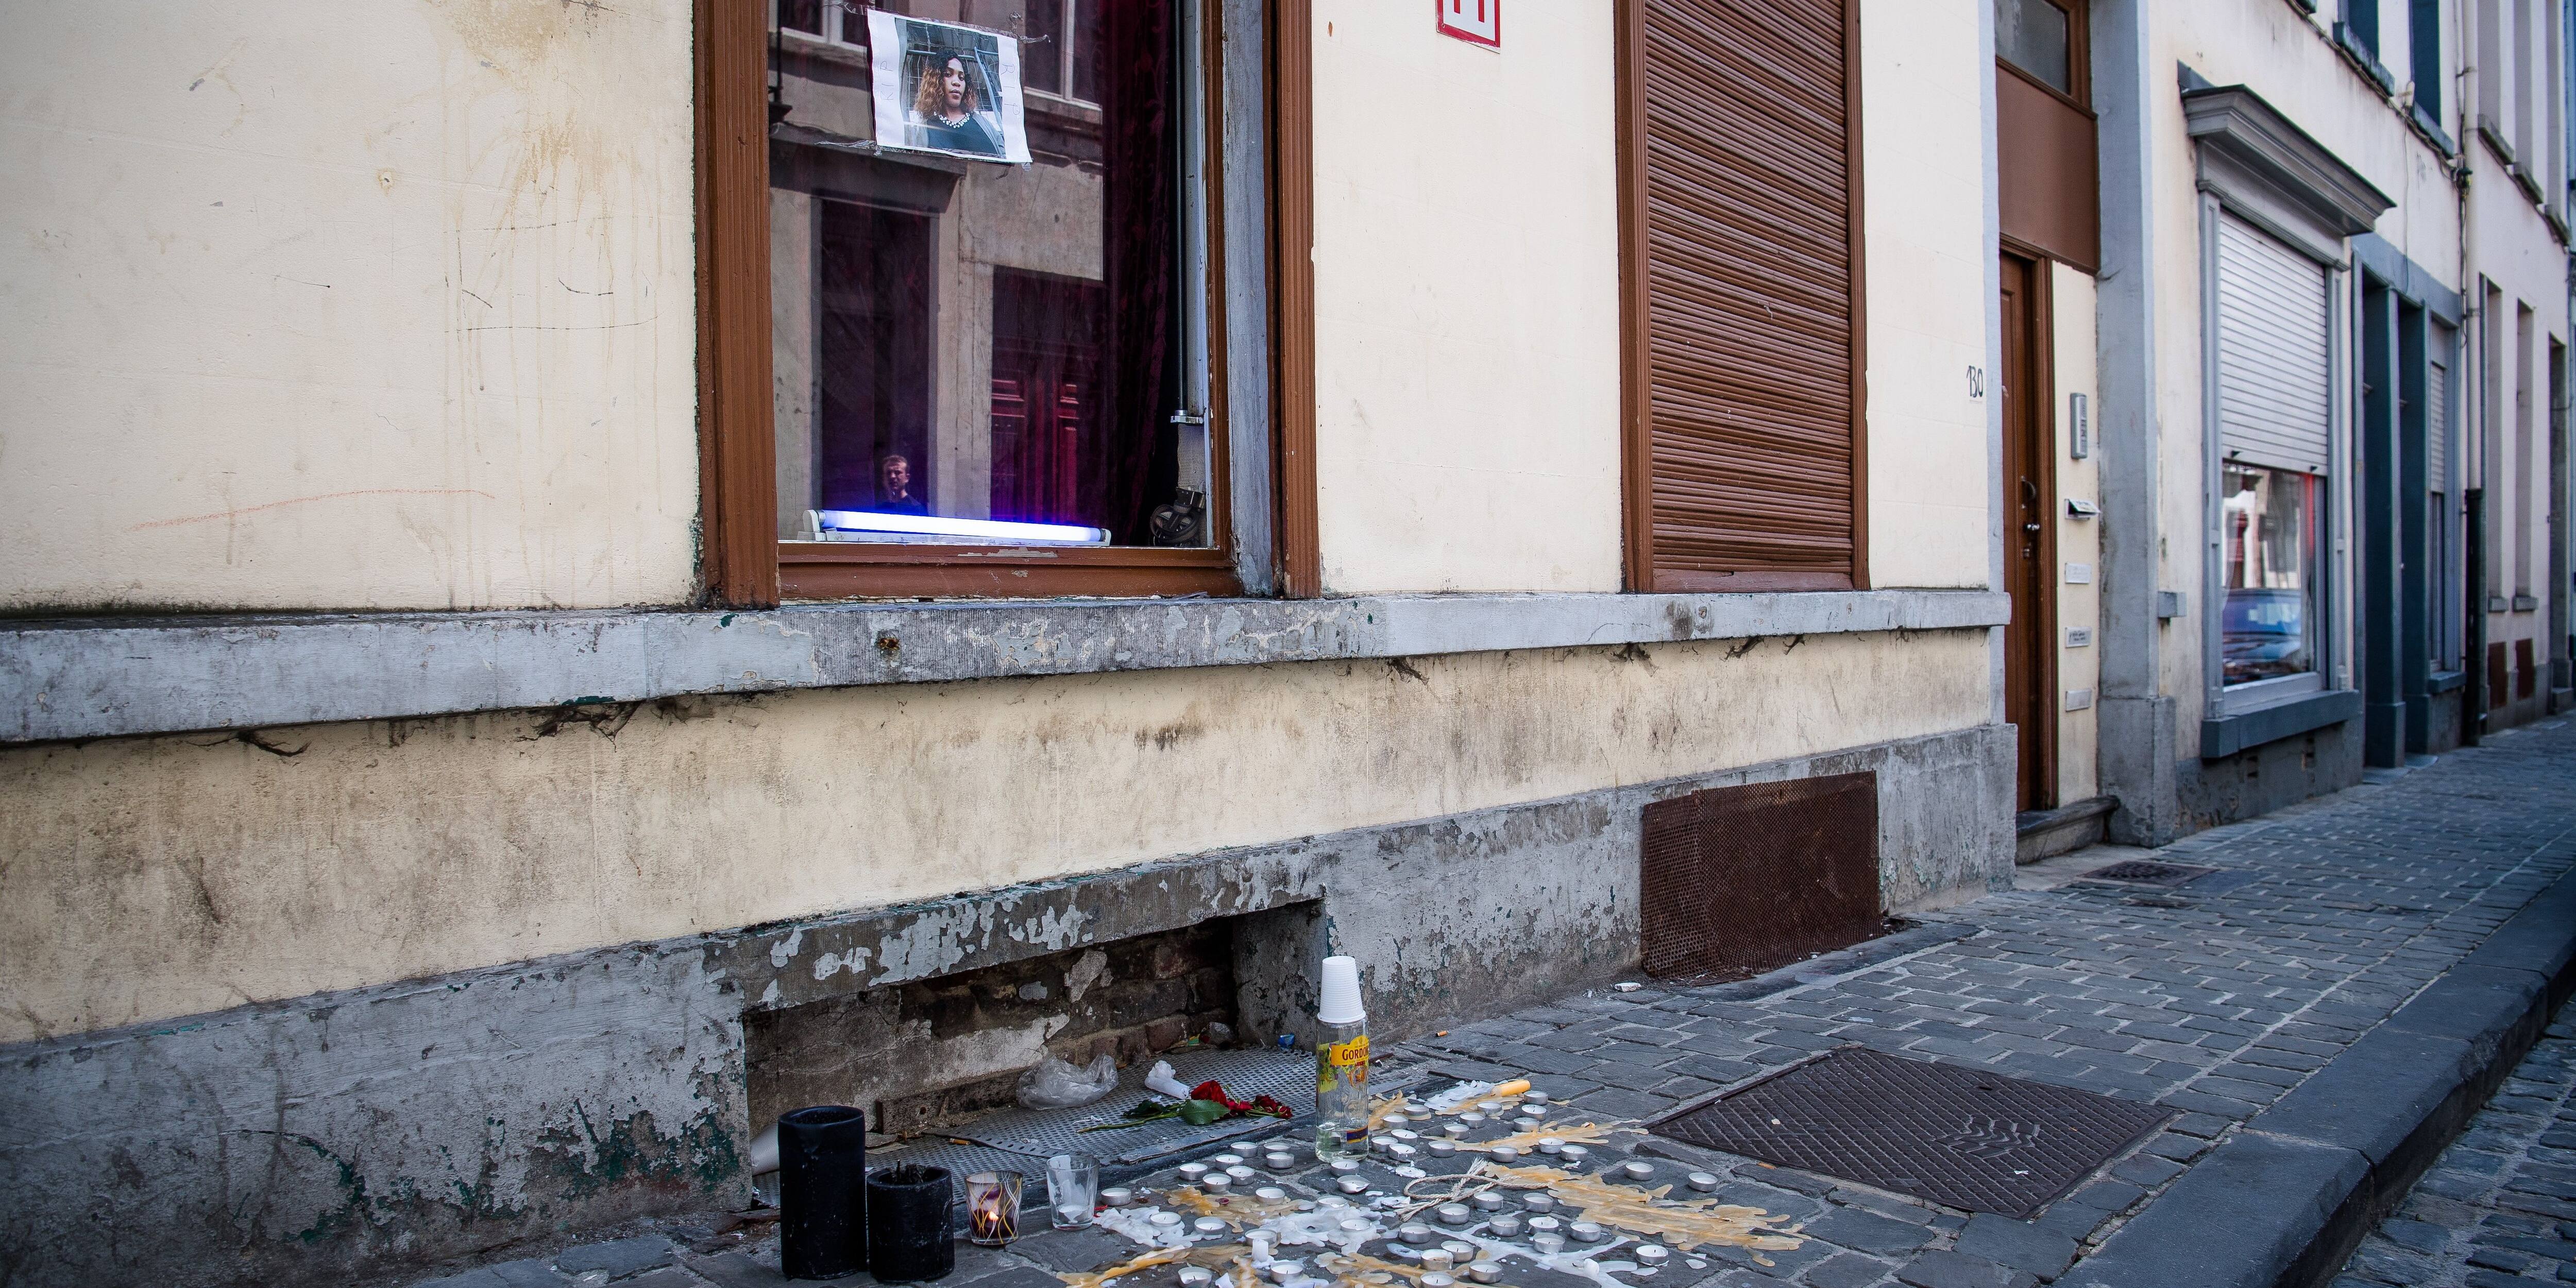 Les prostituées devront cacher leur corps à Namur: «On ne pourra plus voir que les visages»